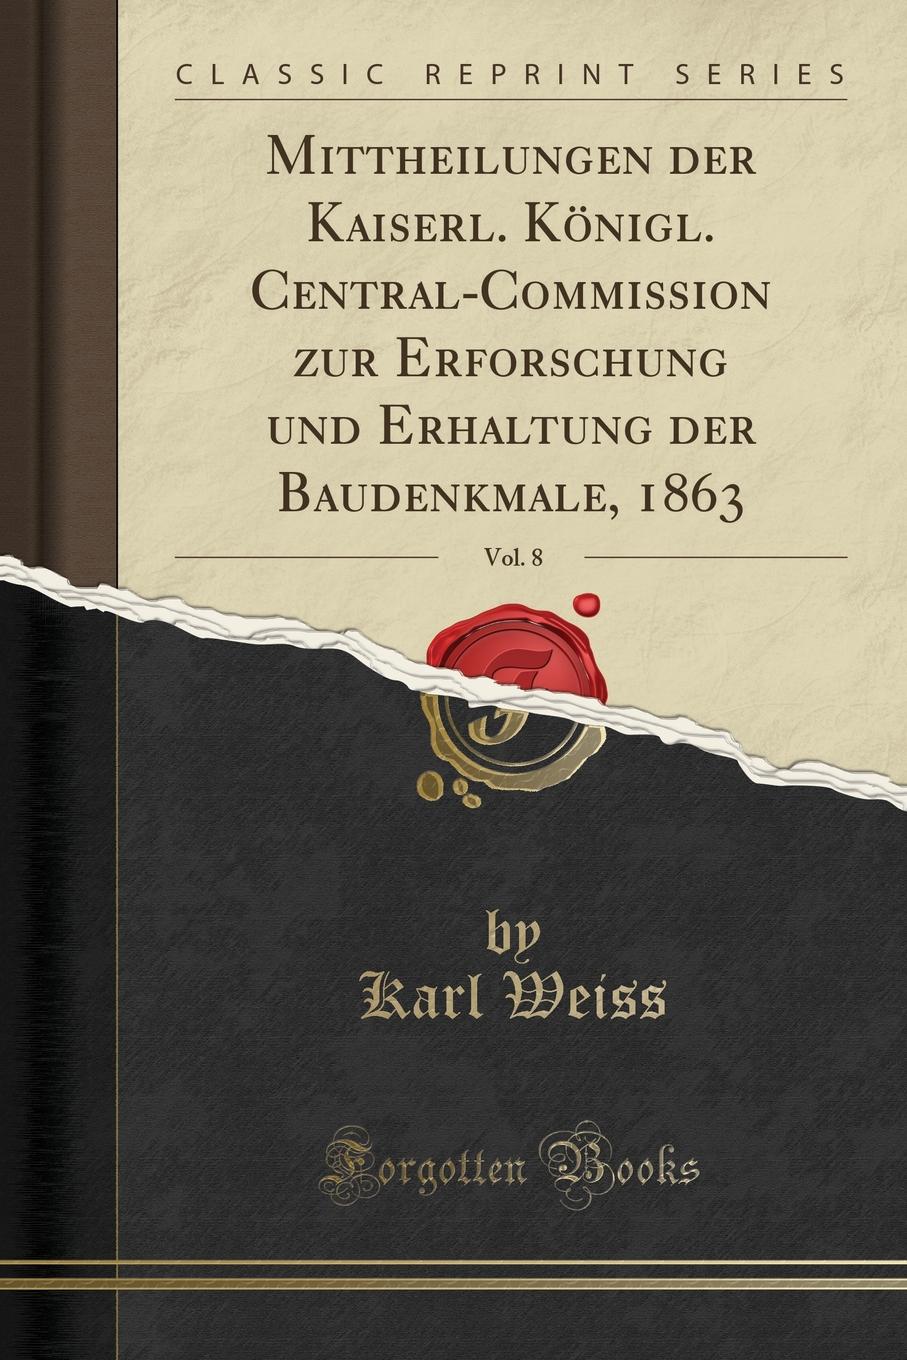 Mittheilungen der Kaiserl. Konigl. Central-Commission zur Erforschung und Erhaltung der Baudenkmale, 1863, Vol. 8 (Classic Reprint)